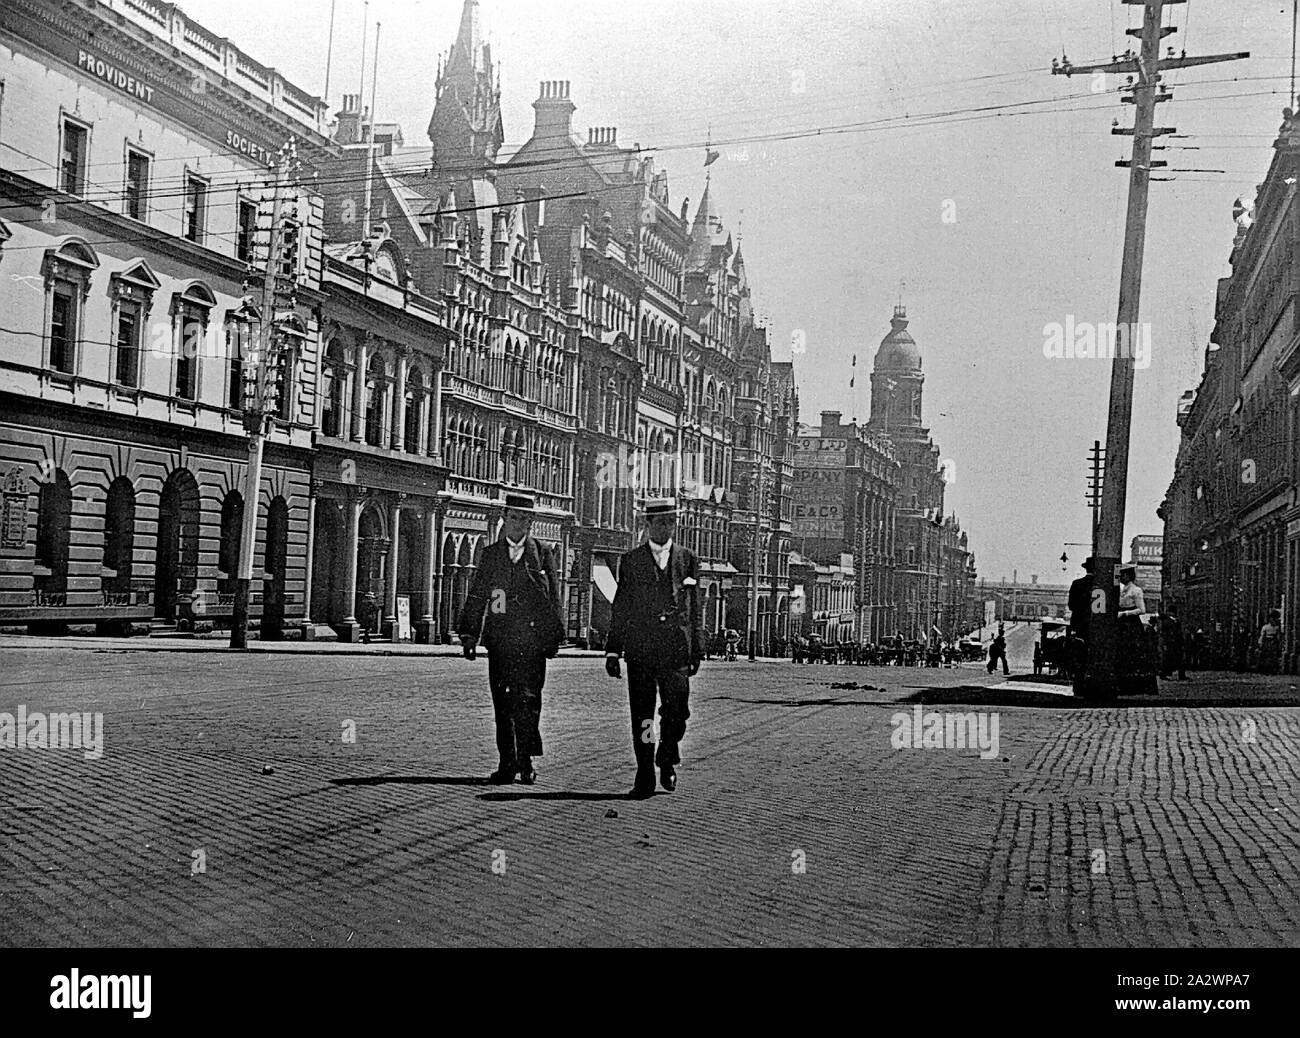 Negativo - Melbourne, Victoria, circa 1900, Collins Street, guardando ad ovest. Due uomini, sia indossando diportisti di paglia, sono attraversando la strada in primo piano. La torre della Federal Hotel è visibile in background Foto Stock